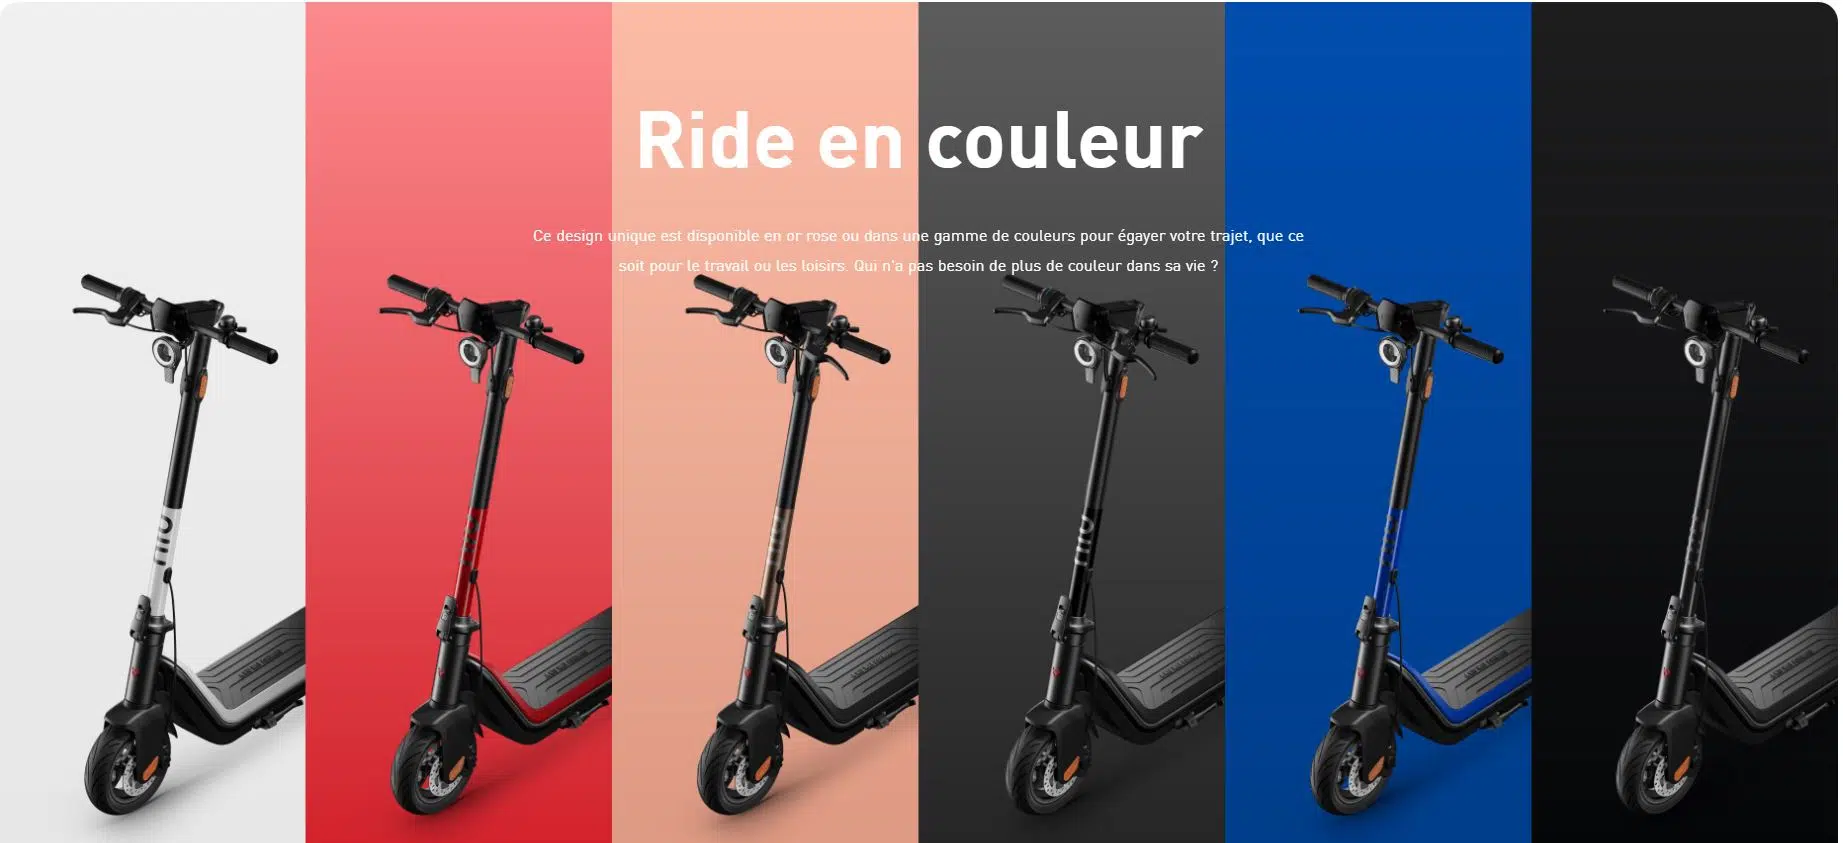 Un groupe de scooters de différentes couleurs avec les mots "ride en couleur" représentant la marque trottinette électrique niu technology.